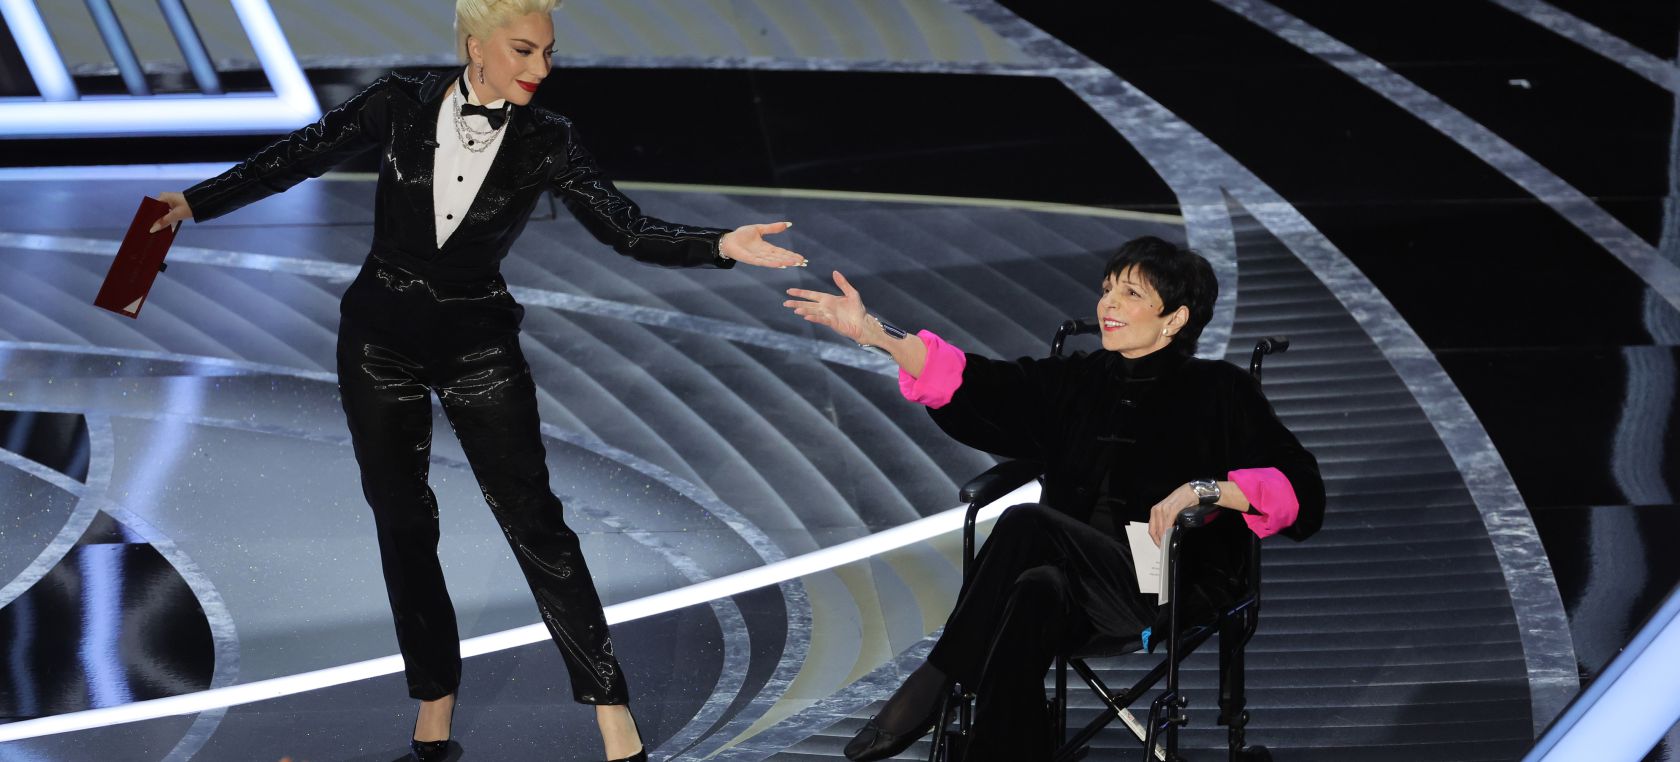 Críticas a los Premios Oscar 2022 por haber impuesto a Liza Minnelli aparecer en silla de ruedas